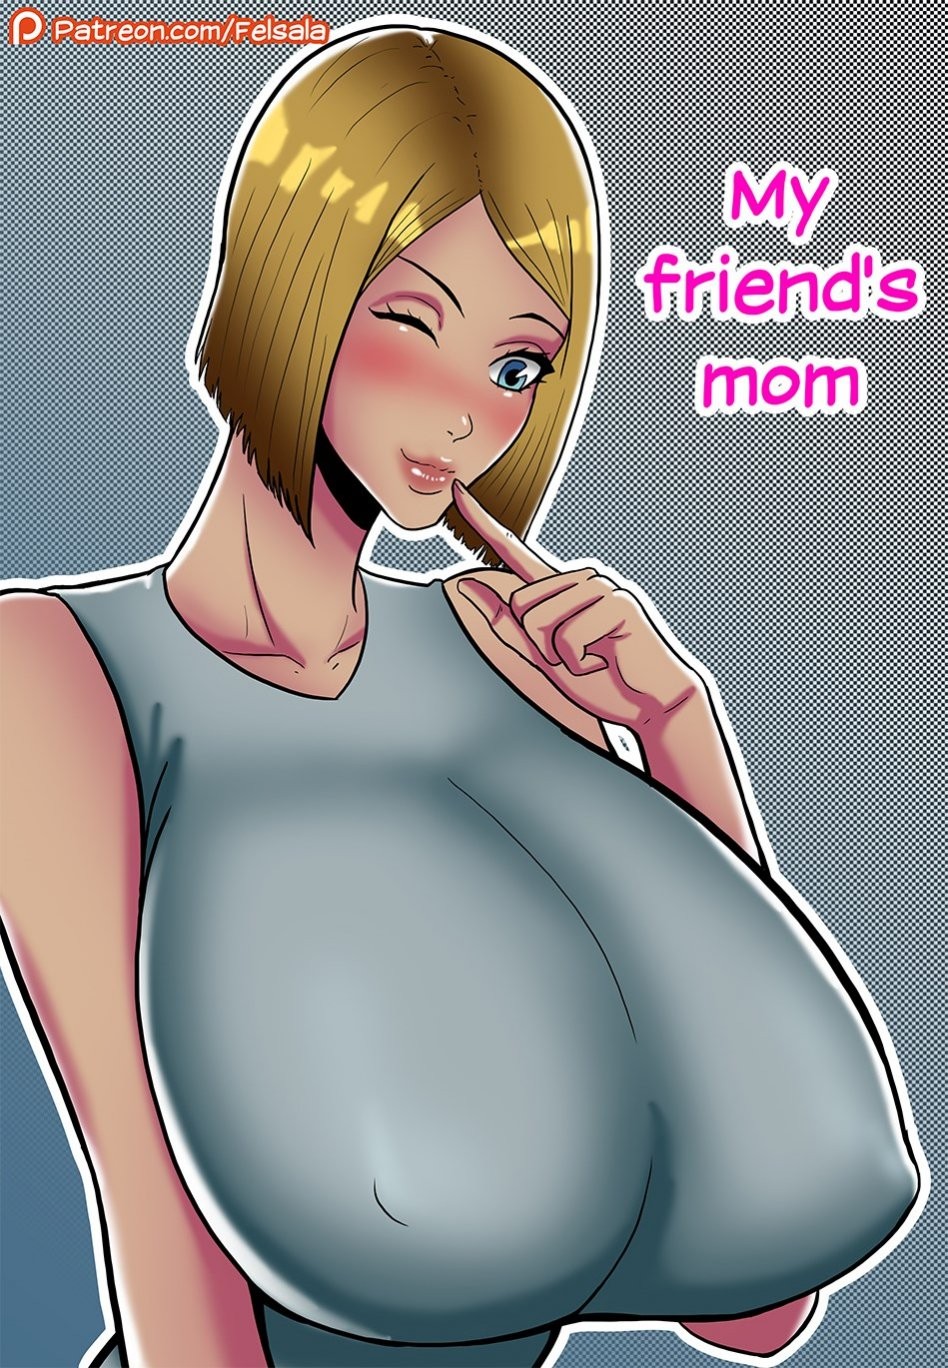 My friend’s mom